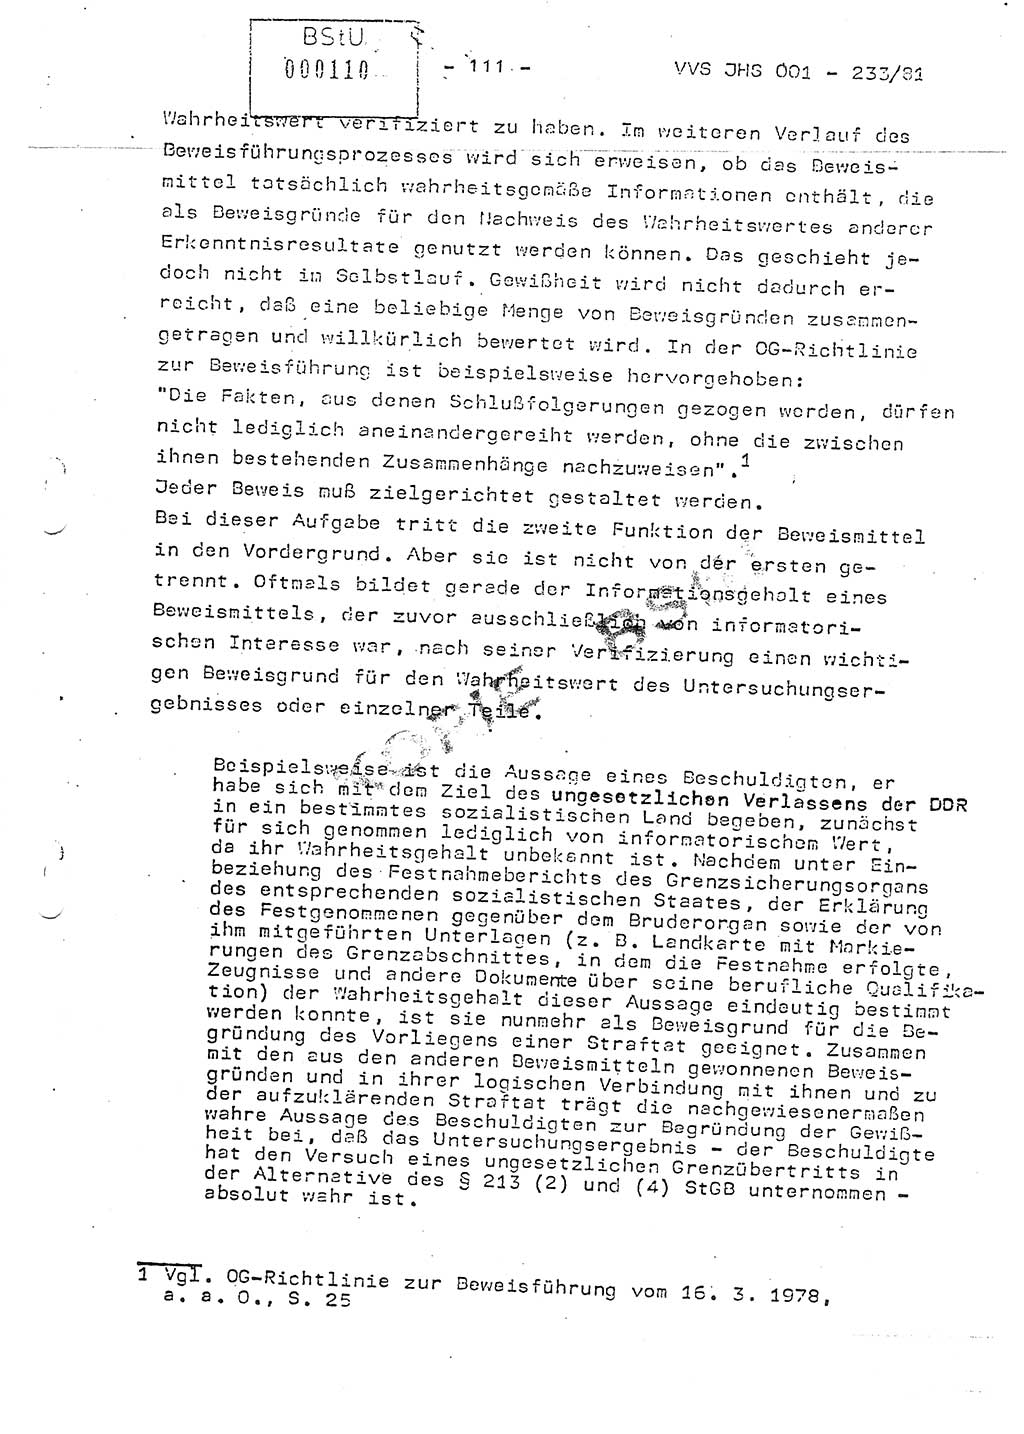 Dissertation Oberstleutnant Horst Zank (JHS), Oberstleutnant Dr. Karl-Heinz Knoblauch (JHS), Oberstleutnant Gustav-Adolf Kowalewski (HA Ⅸ), Oberstleutnant Wolfgang Plötner (HA Ⅸ), Ministerium für Staatssicherheit (MfS) [Deutsche Demokratische Republik (DDR)], Juristische Hochschule (JHS), Vertrauliche Verschlußsache (VVS) o001-233/81, Potsdam 1981, Blatt 111 (Diss. MfS DDR JHS VVS o001-233/81 1981, Bl. 111)